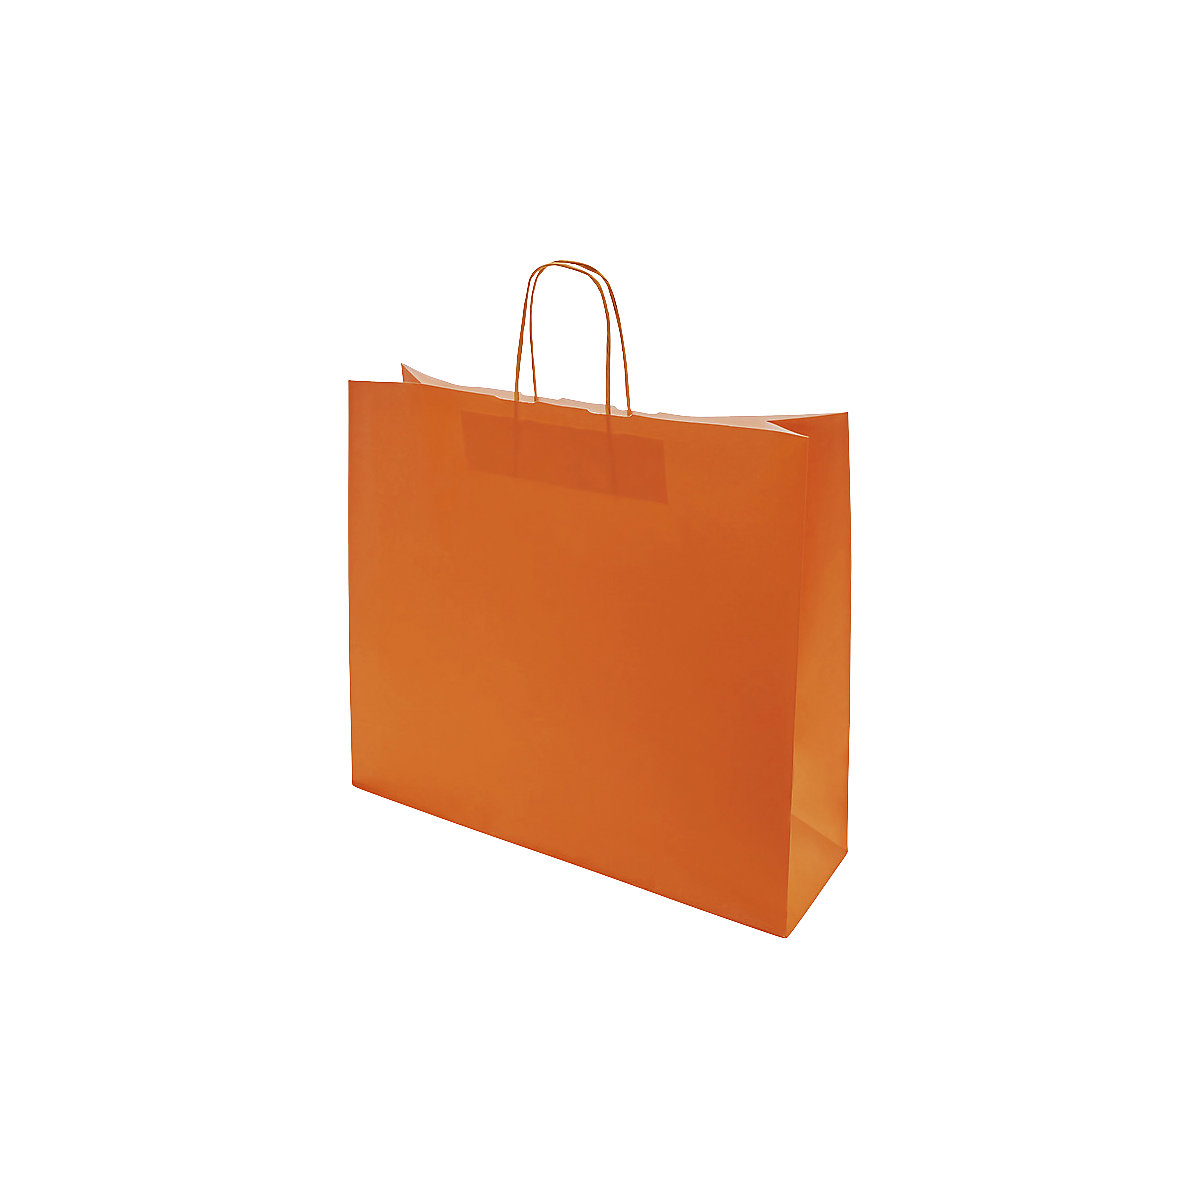 Papiertragetasche FRESH, orange, LxBxH 420 x 130 x 370 mm, 110 g/m², VE 150 Stk, ab 5 VE-1